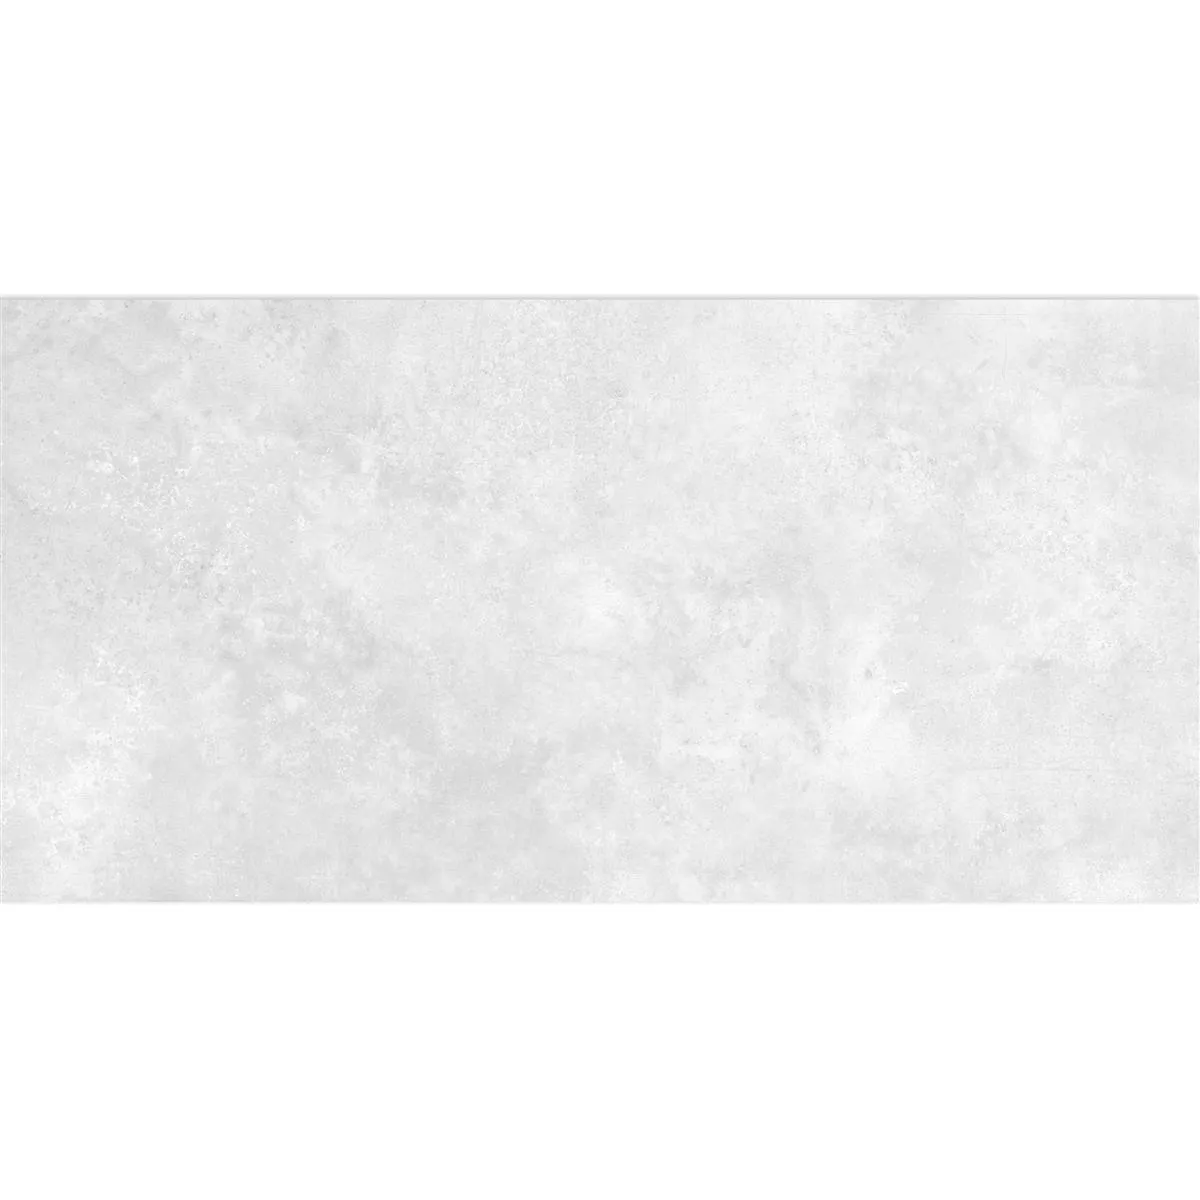 Πλακάκι Δαπέδου Illusion Μεταλλική Εμφάνιση Lappato Ασπρο 30x60cm